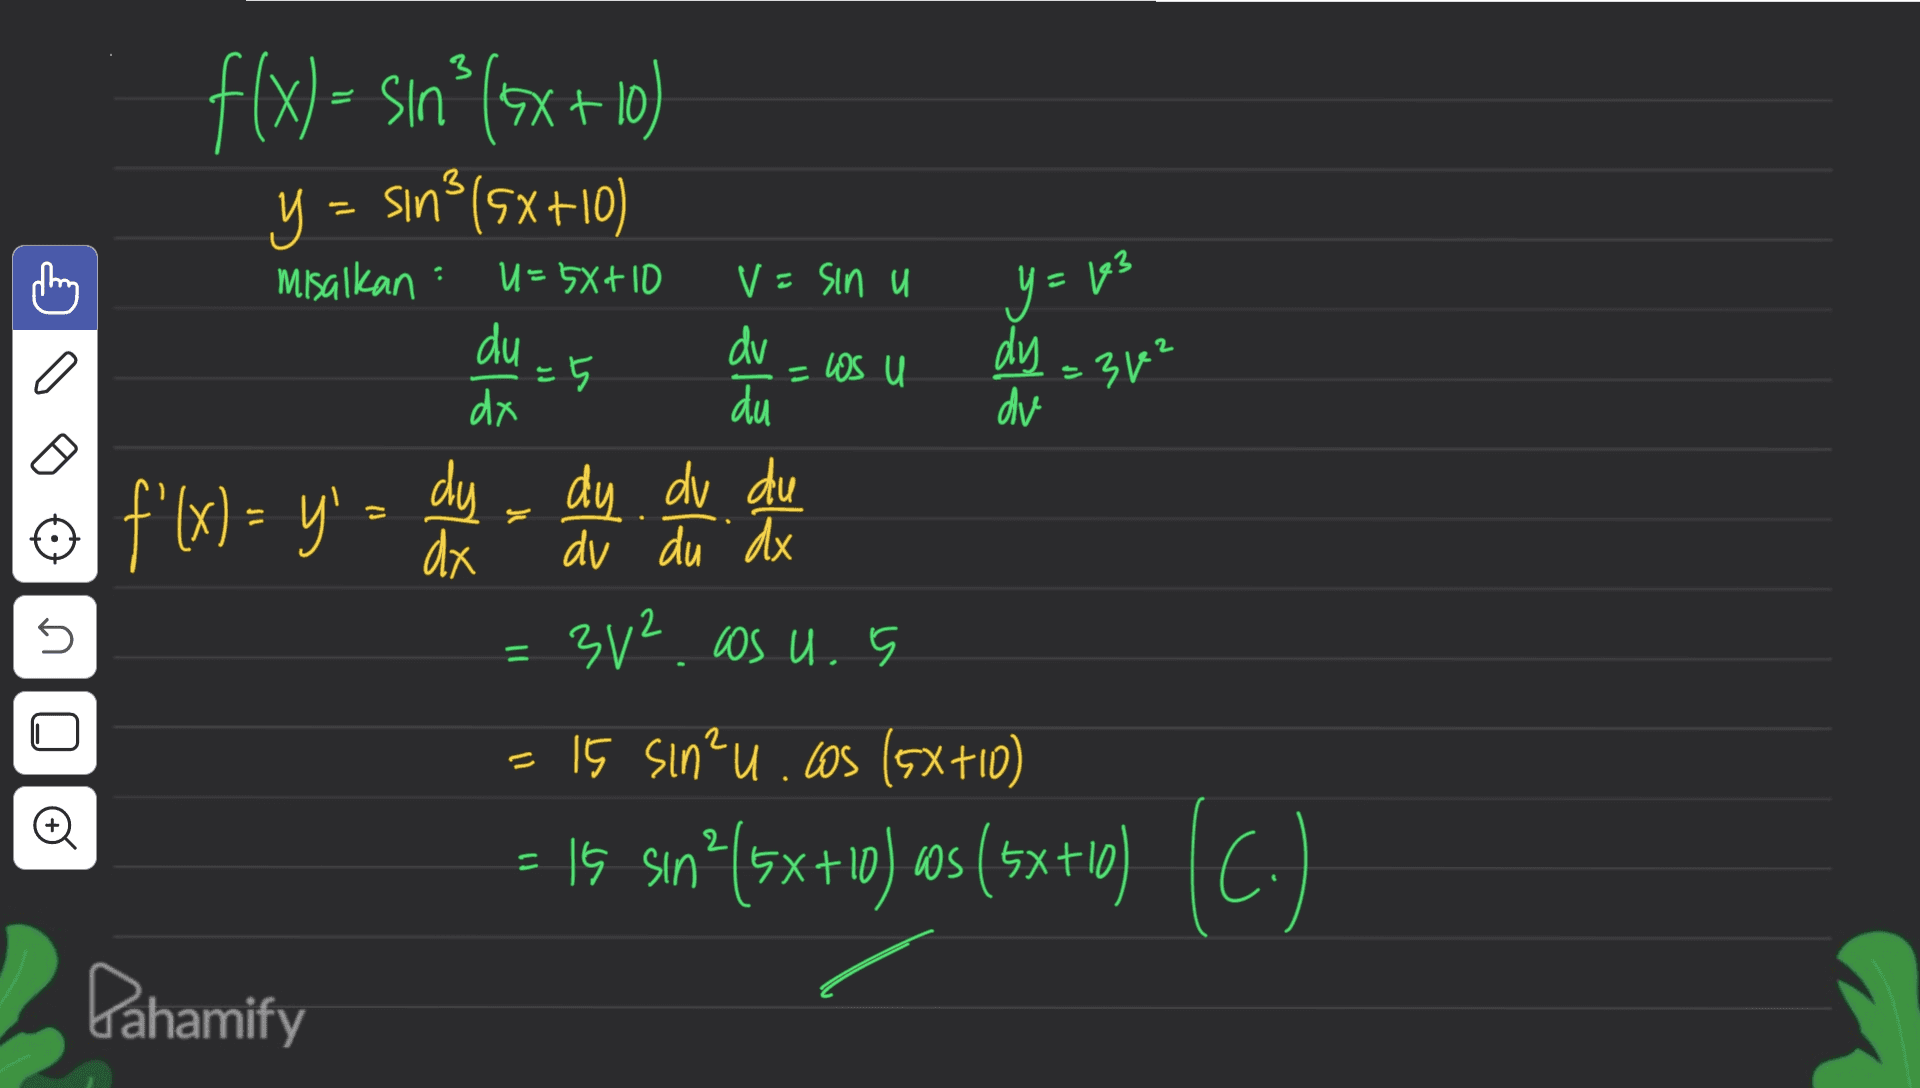 3 3 misalkan U= 5x+10 V = sin u Y = 163 du = US U =3² ° f(x) = sın? (5x+10) Y = sin?(5x+10) y dv =5 dy du dv f'(x)= y'= dy - du du du dx dv du dx 3v² cos u. 5 15 sin²u.cos(5x+10) 15 sinº(5x+10) ws(5x+10 ) 5 = 1 Oo (7) ) sa +)- Pahamify 